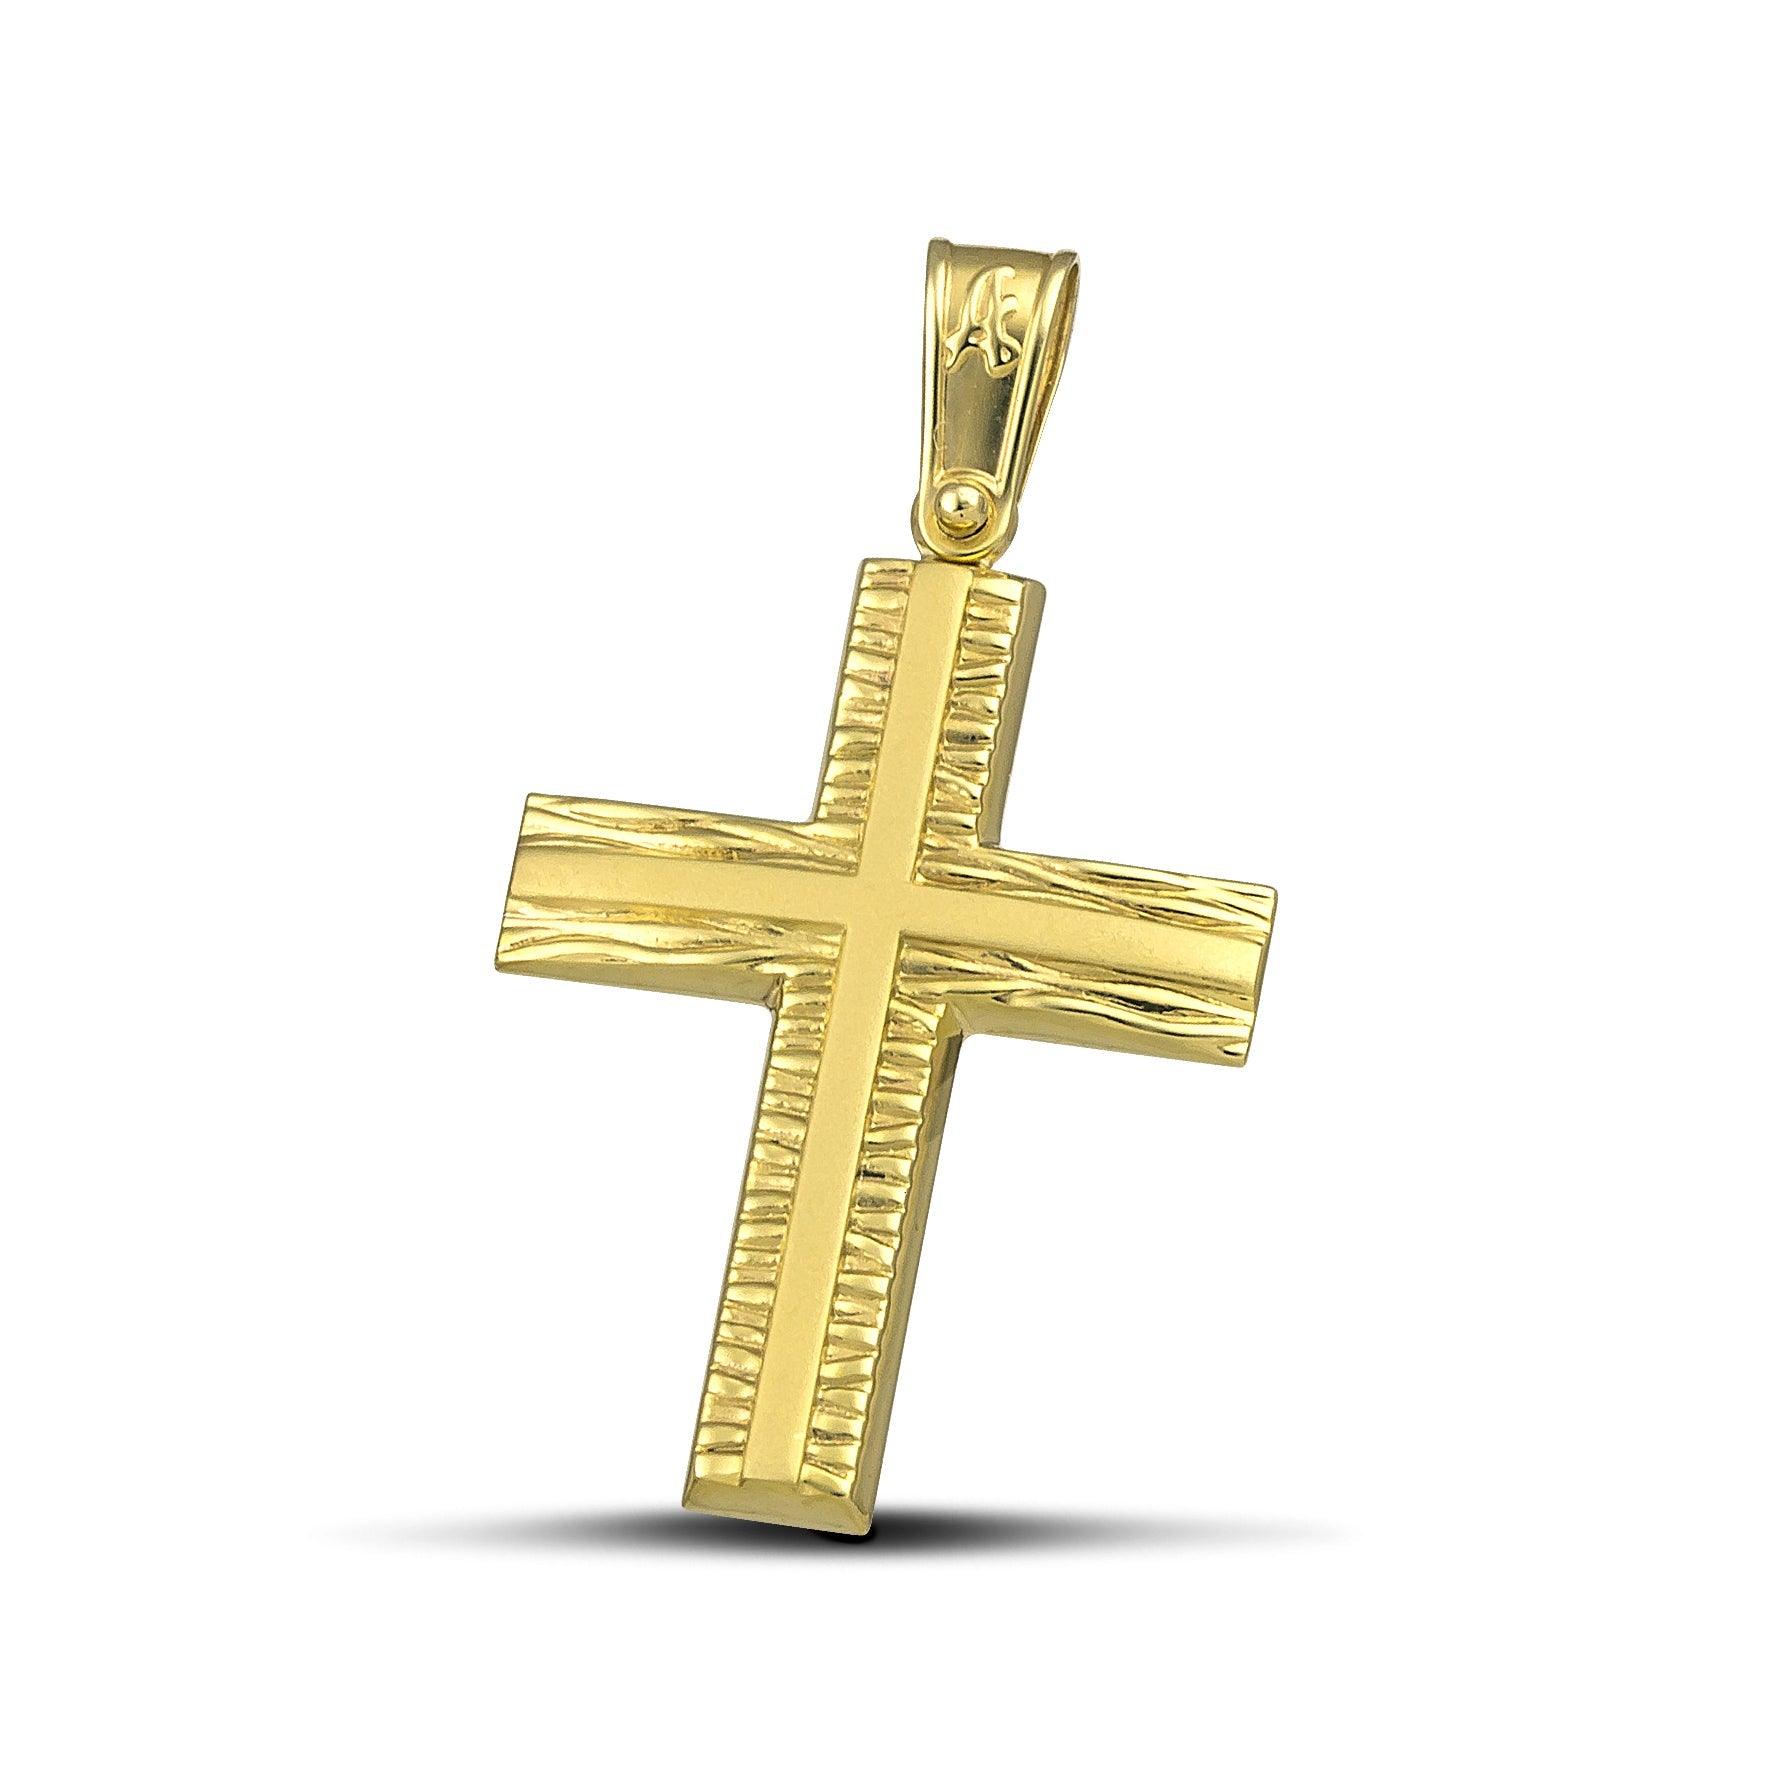 Γυναικείος σταυρός από χρυσό Κ14 με σαγρέ και λουστράτη επιφάνεια. 